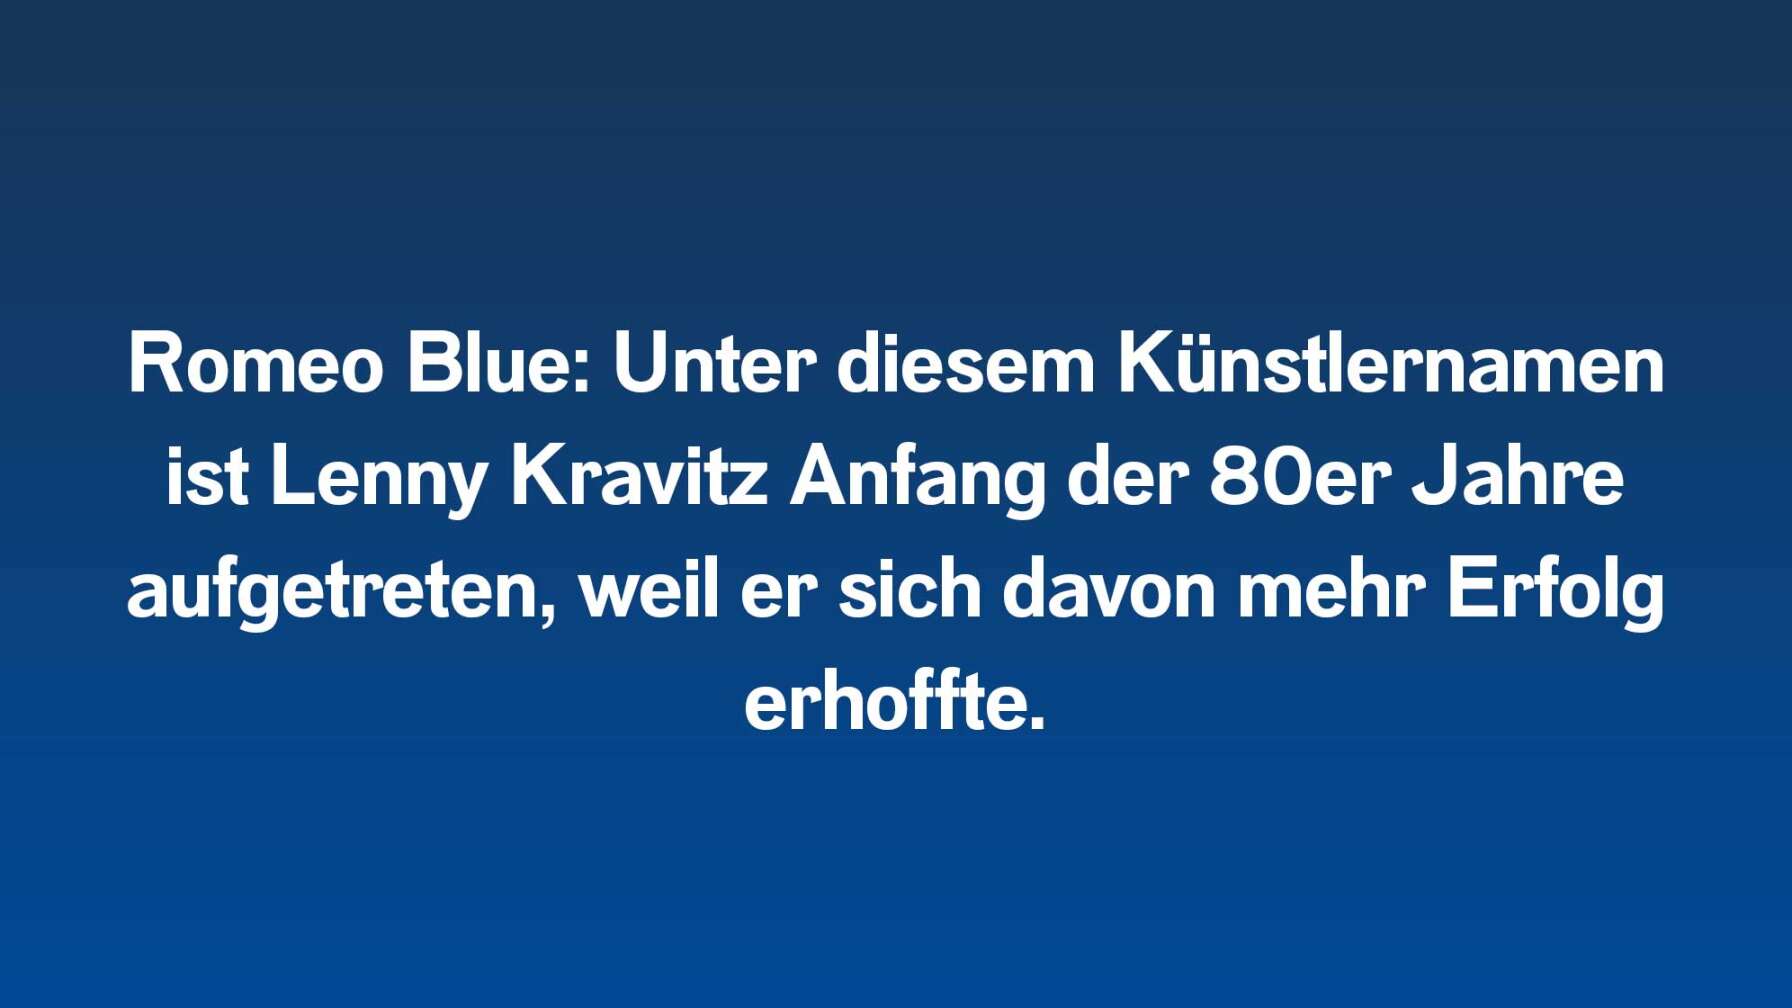 Romeo Blue: Unter diesem Künstlernamen ist Lenny Kravitz Anfang der 80er Jahre aufgetreten, weil er sich davon mehr Erfolg erhoffte.